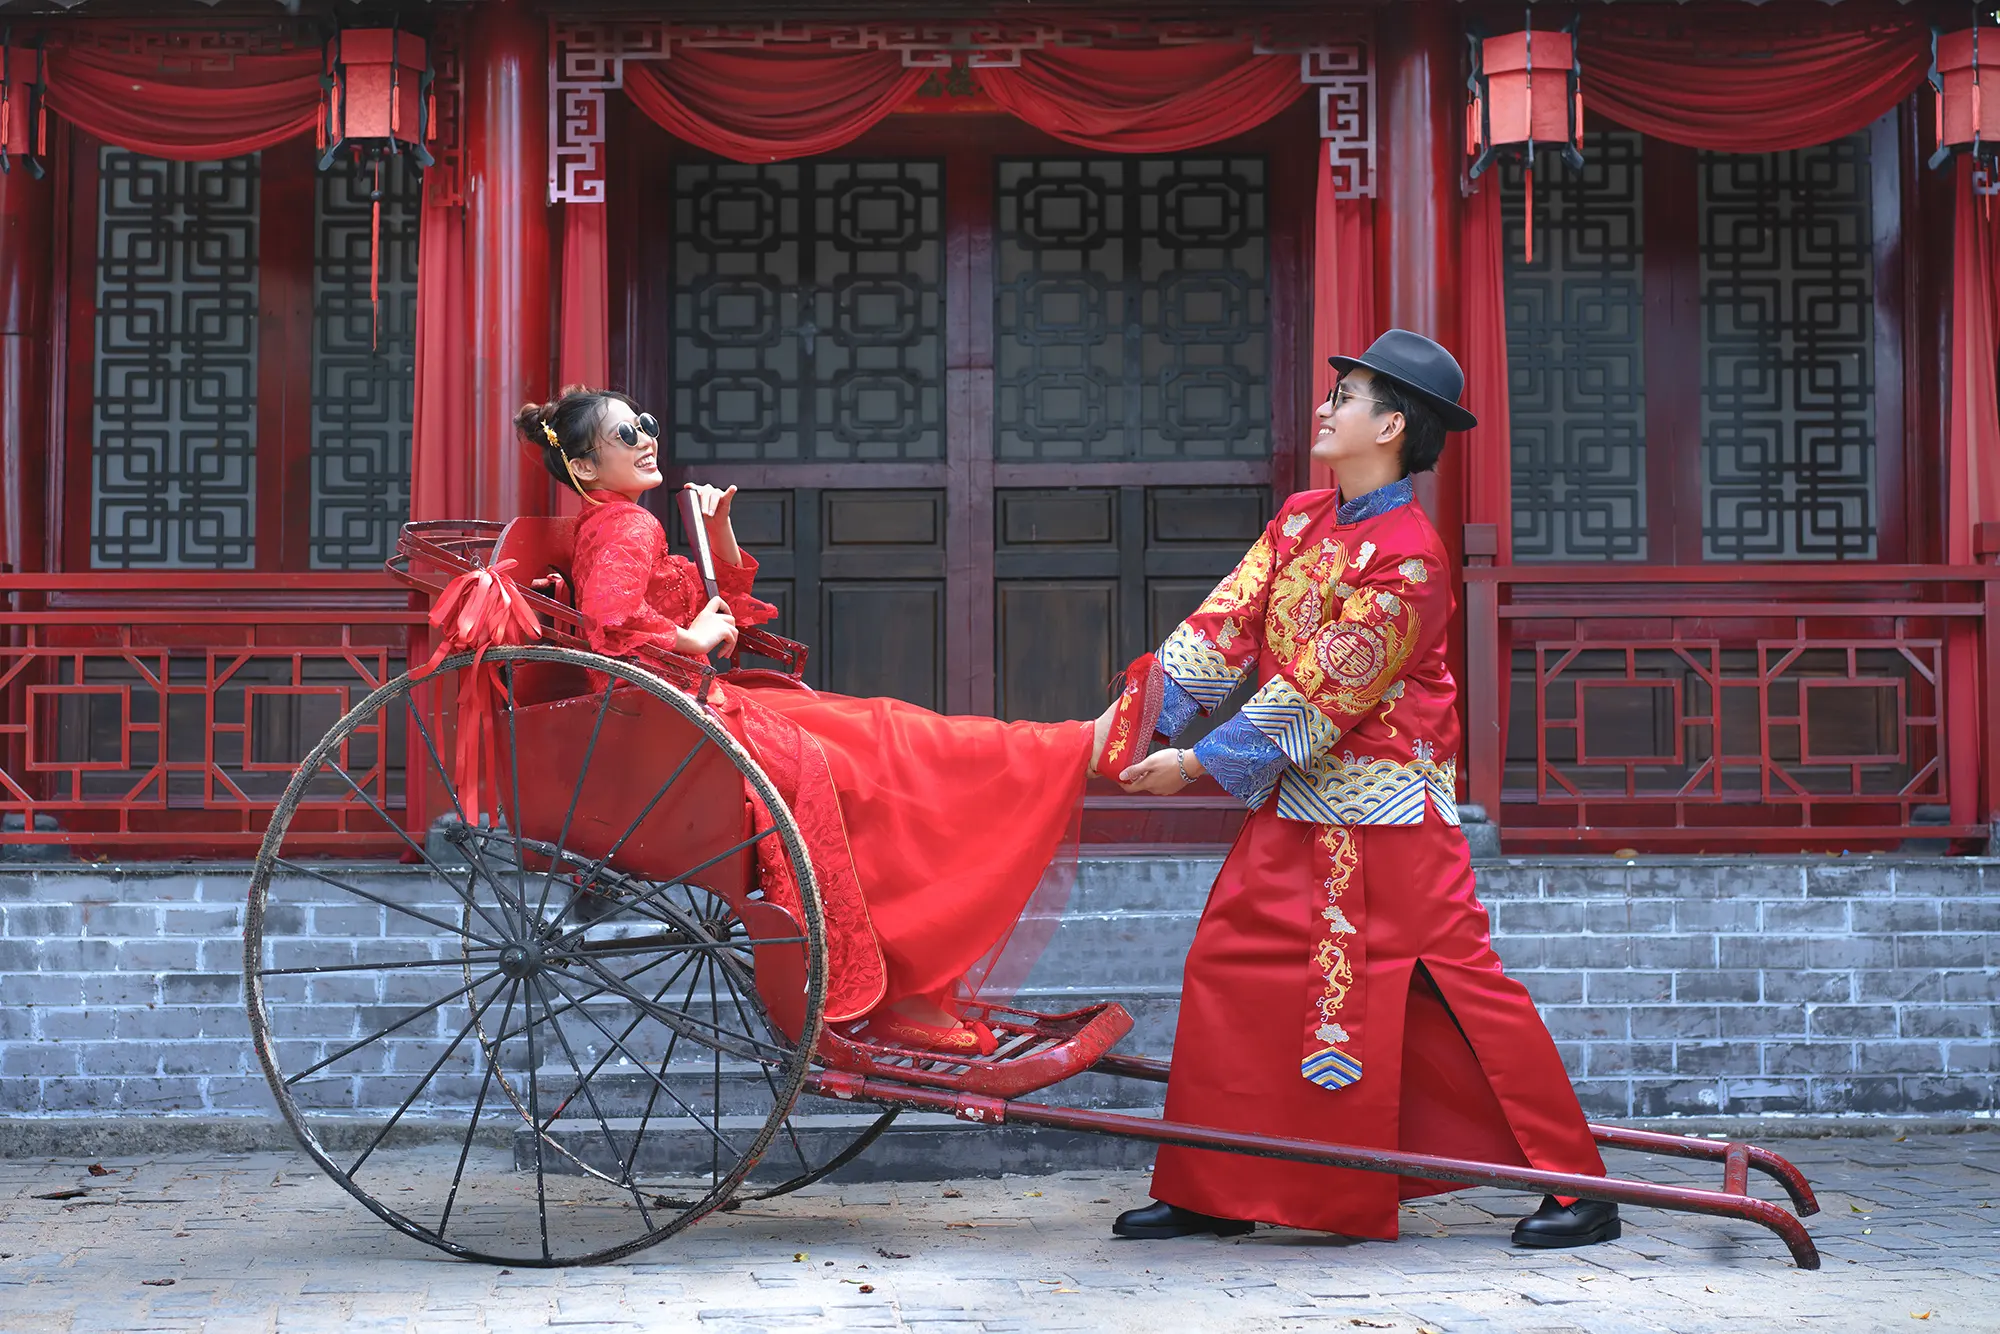 Xem ảnh cưới cổ trang Trung Quốc để được chìm đắm vào thế giới cổ điển, lãng mạn và đầy sắc màu đặc trưng của văn hóa Trung Hoa. Những bộ trang phục độc đáo, những giờ phút lãng mạn được ghi lại sẽ làm cho ngày cưới của bạn trở nên trân quý và đậm chất Á đông.